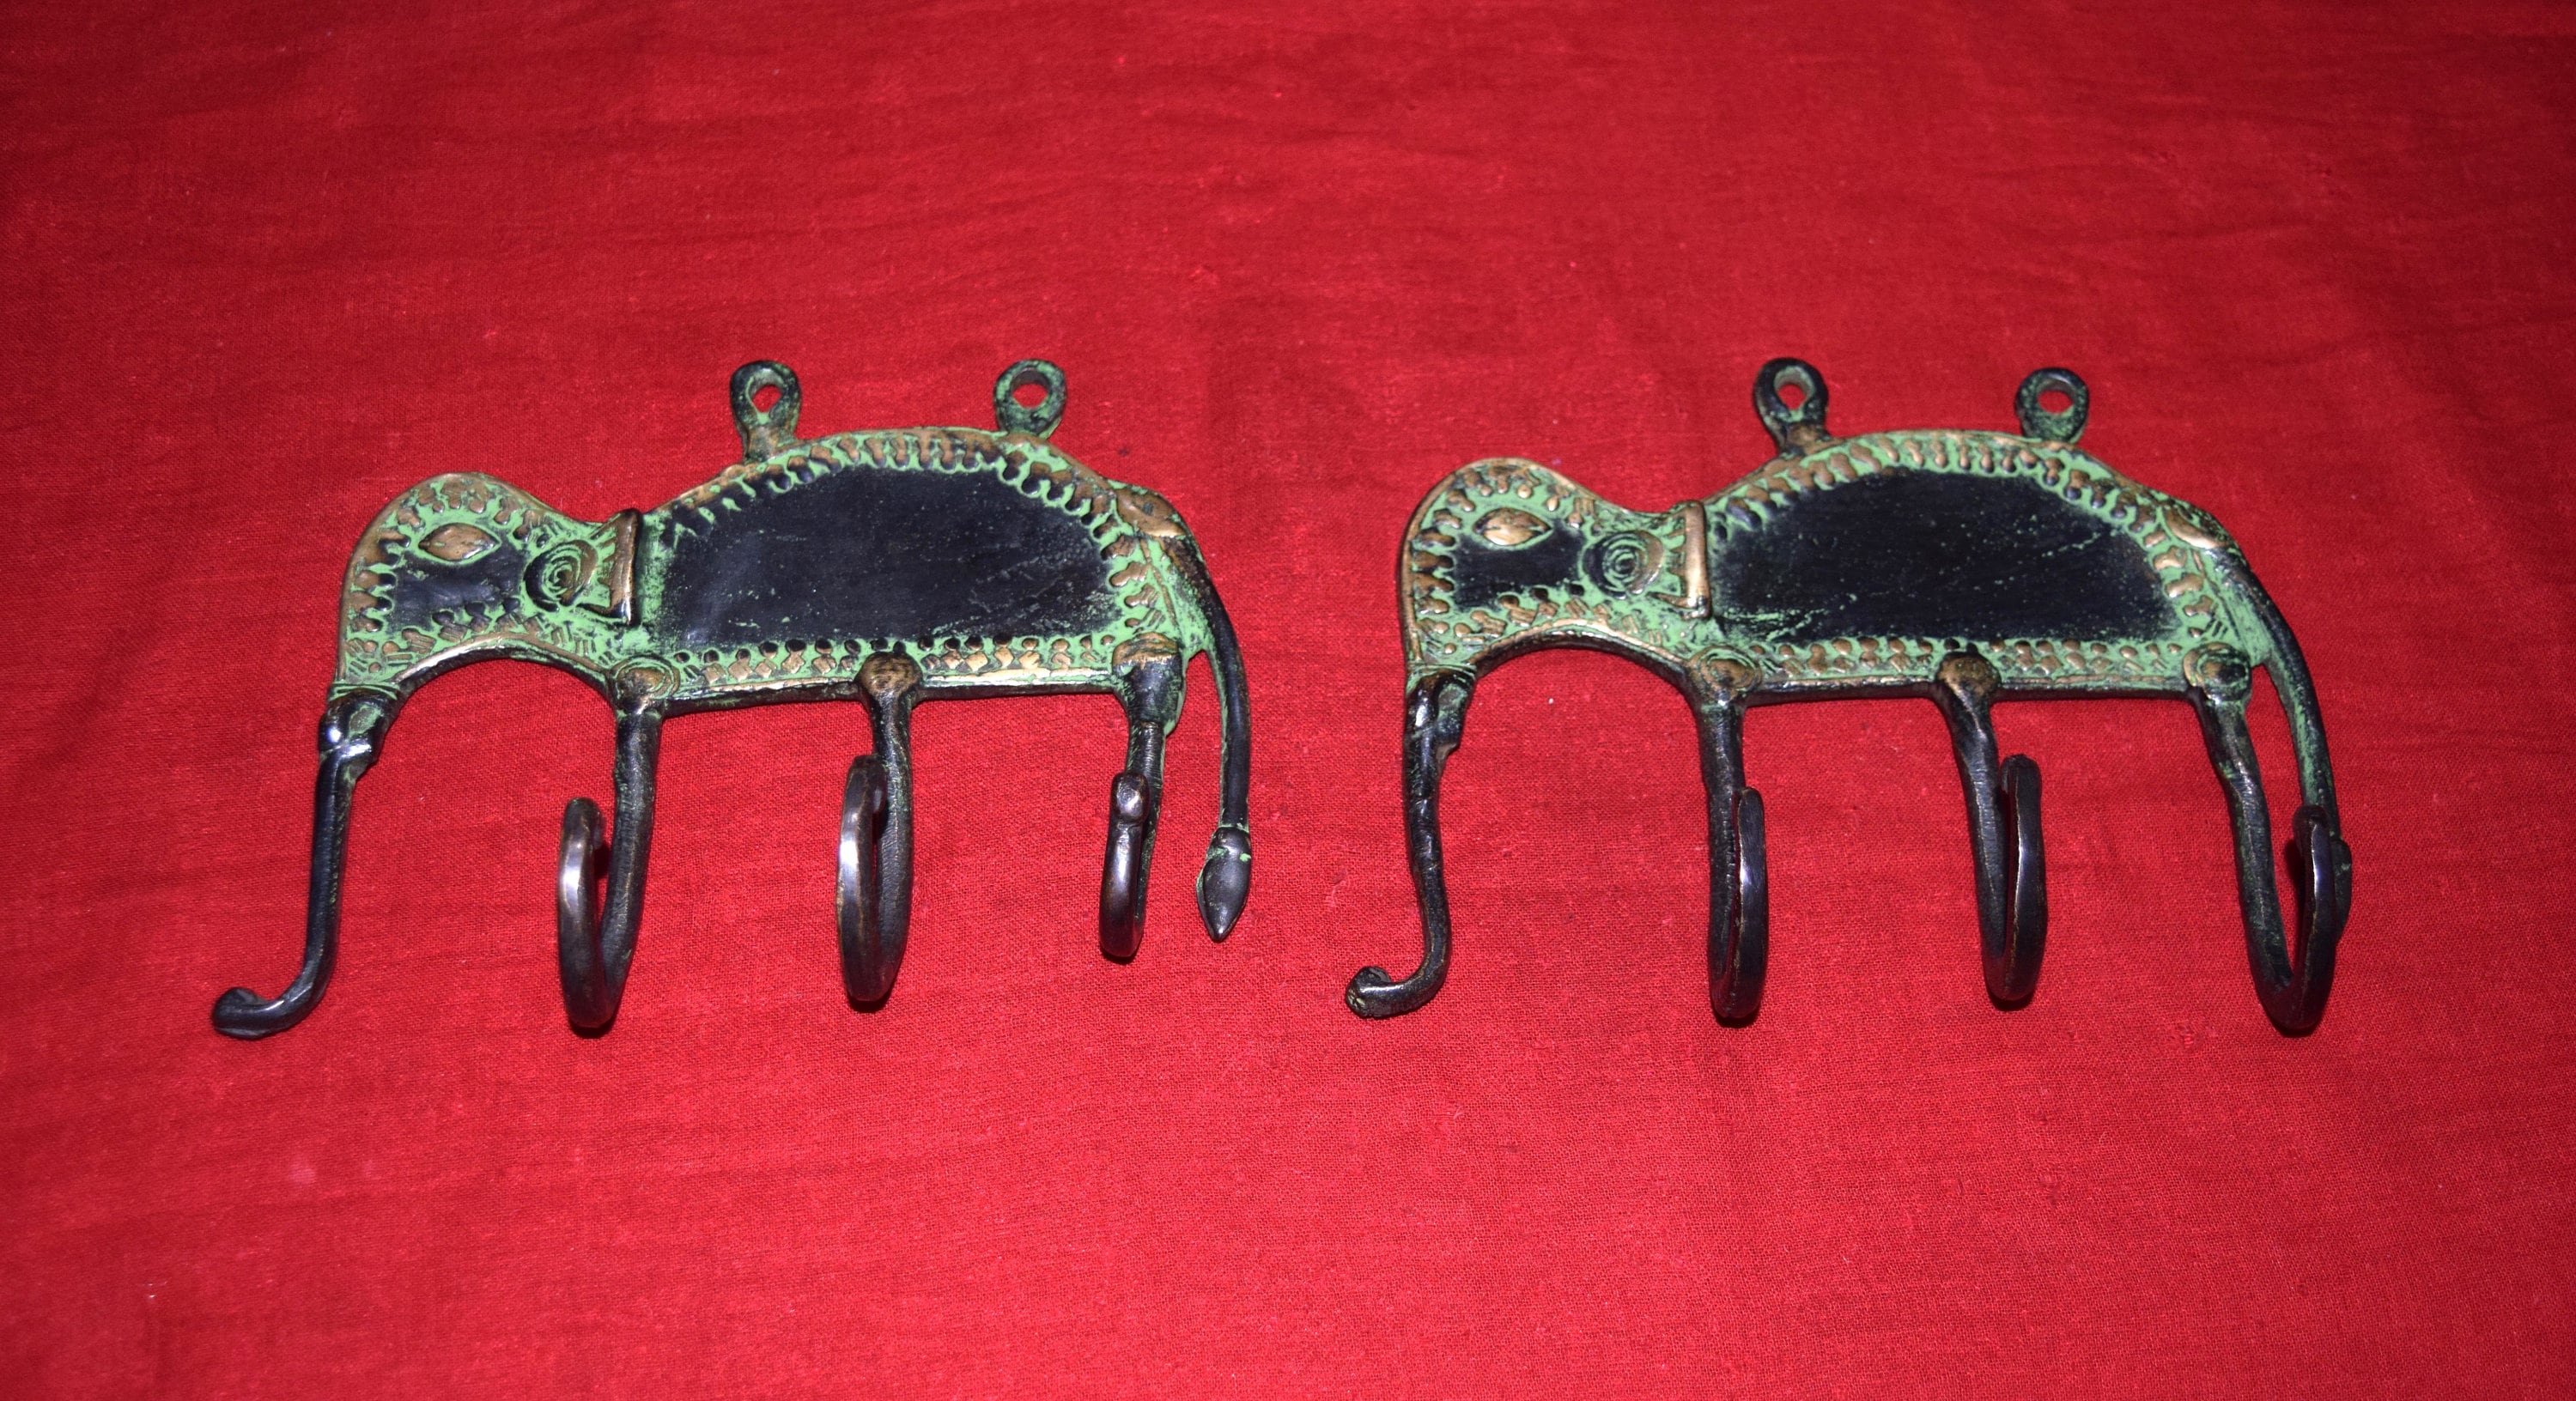 Deluxe Brass Animal Wall Hook - Elephant & Ram